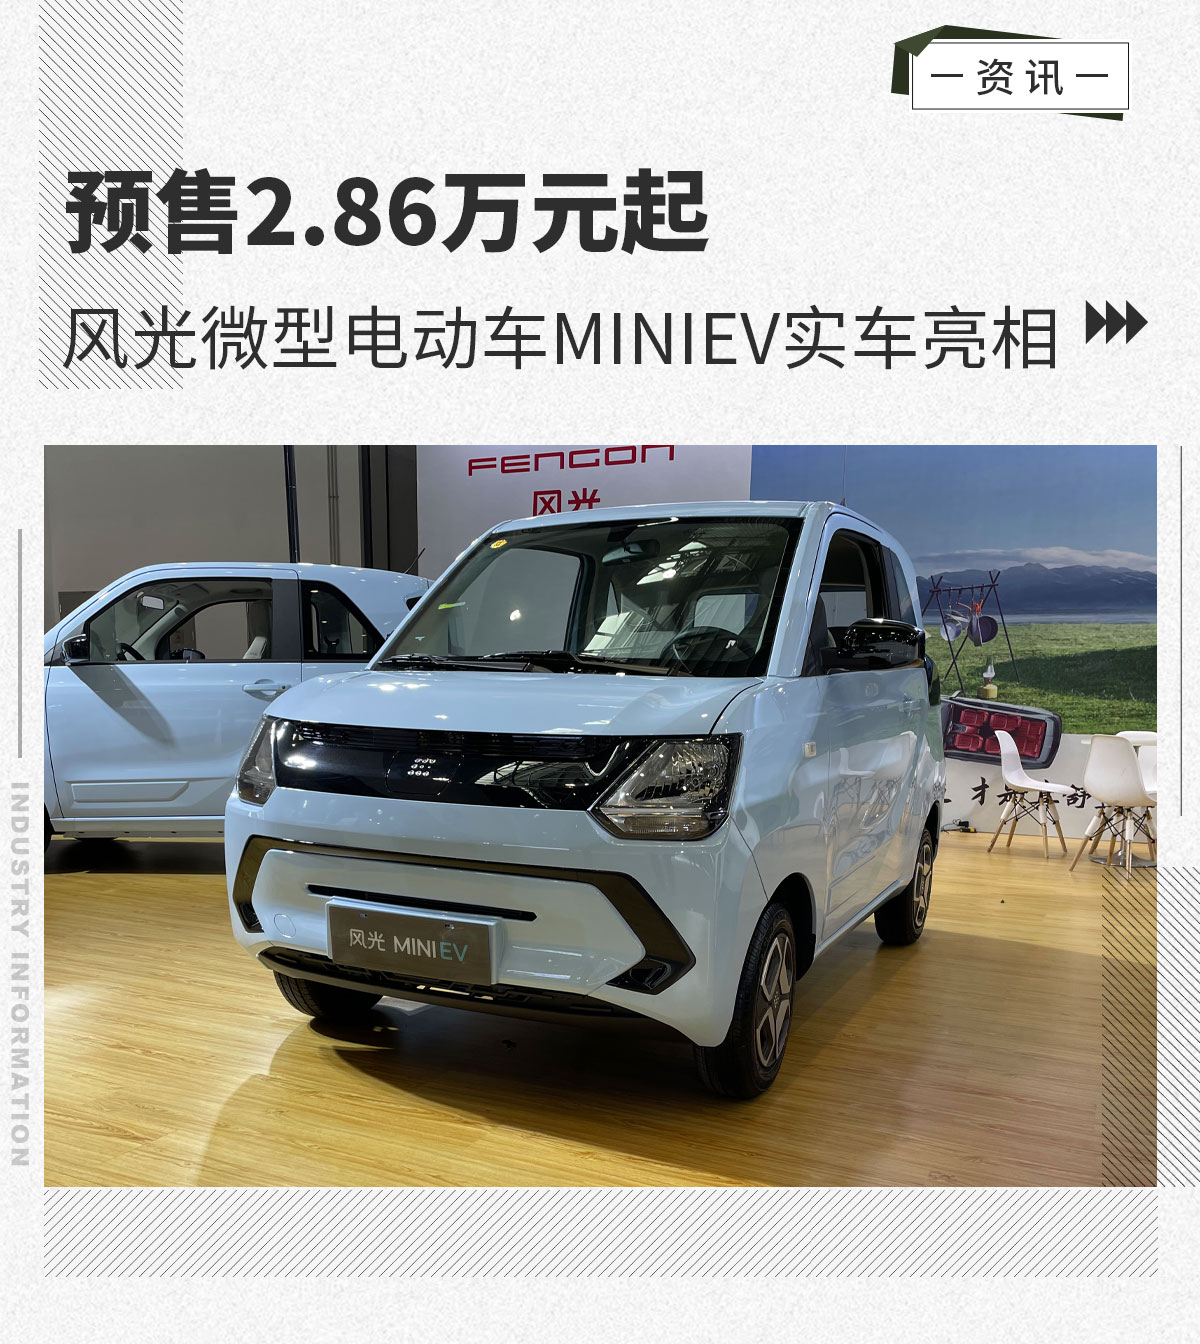 预售2.86万元起风光微型电动车MINIEV实车亮相